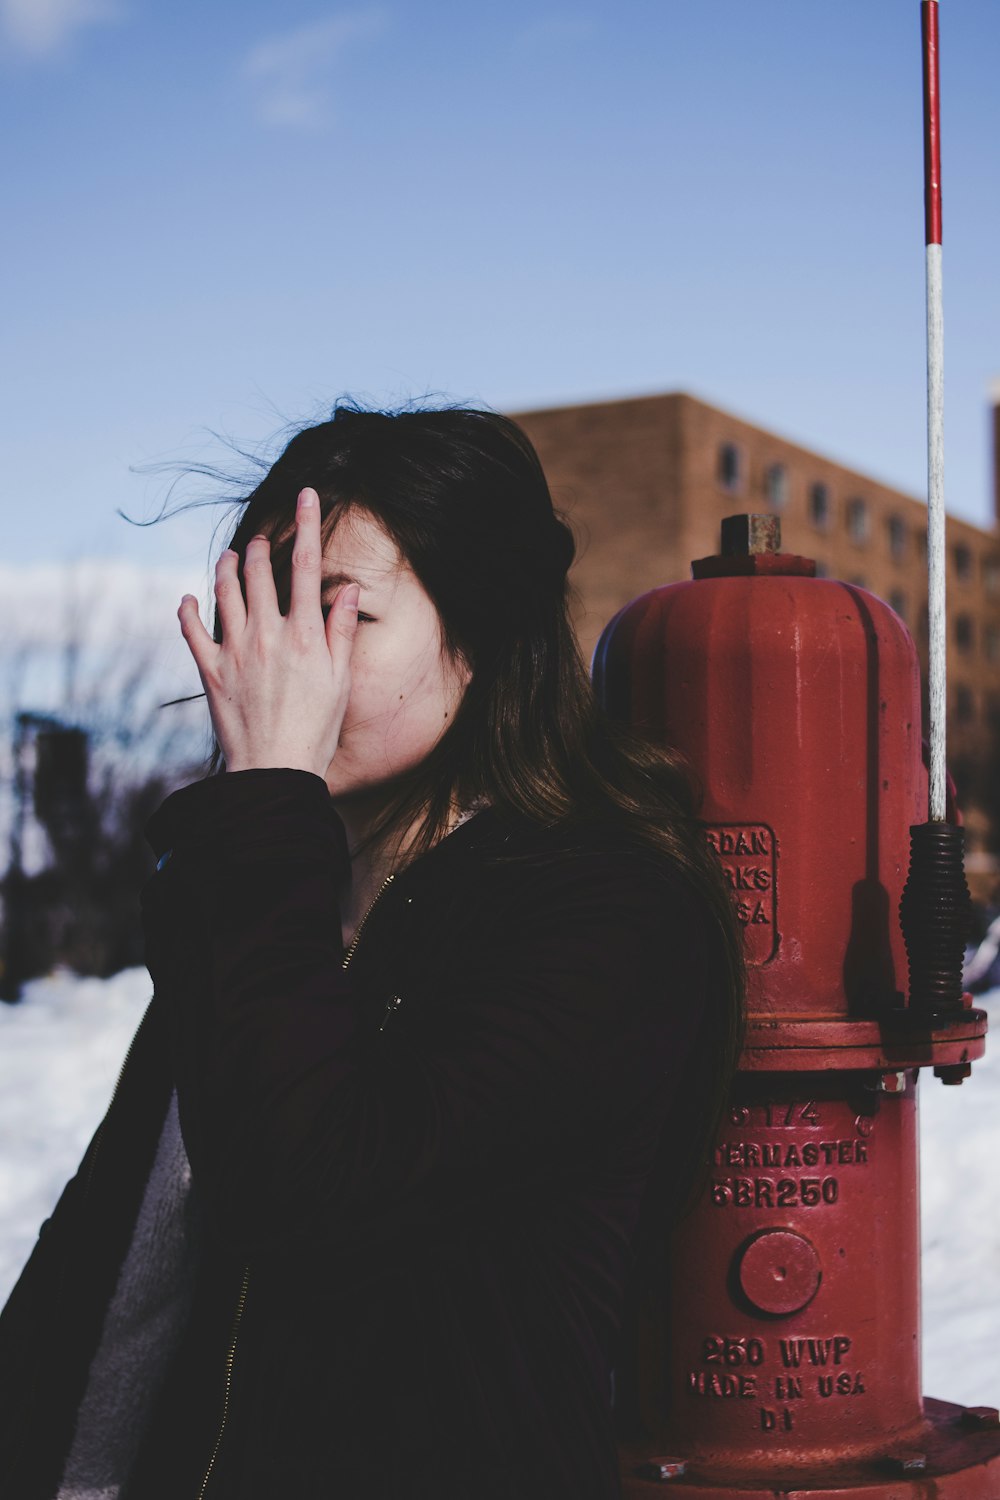 Mujer apoyada al lado de la boca de incendios roja